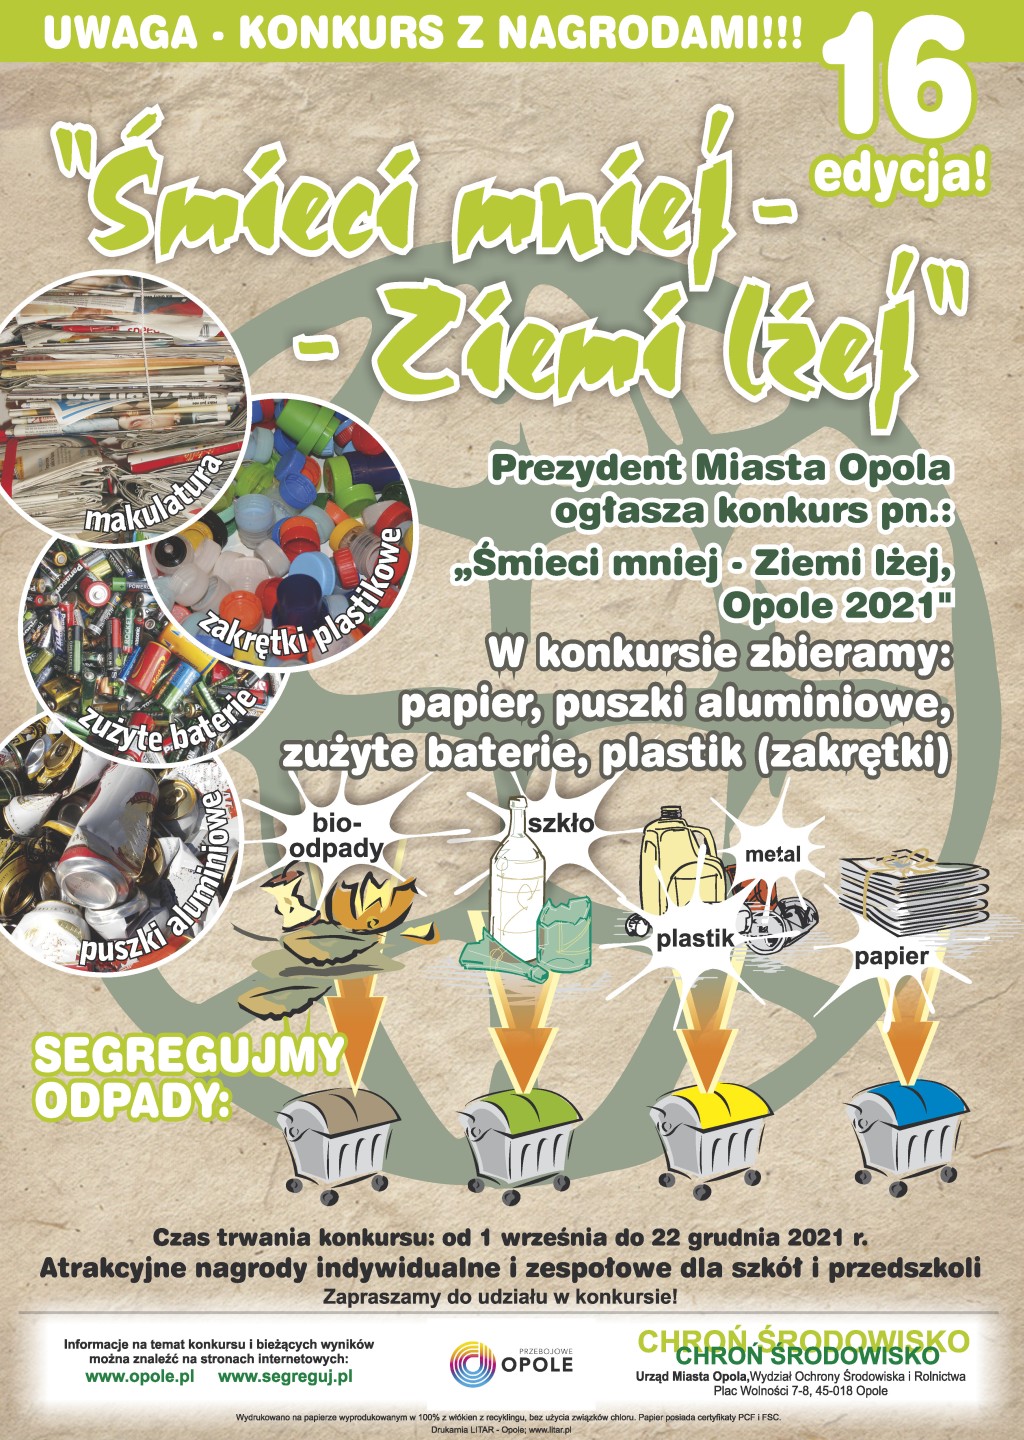 Śmieci mniej - Ziemi lżej, Opole 2021